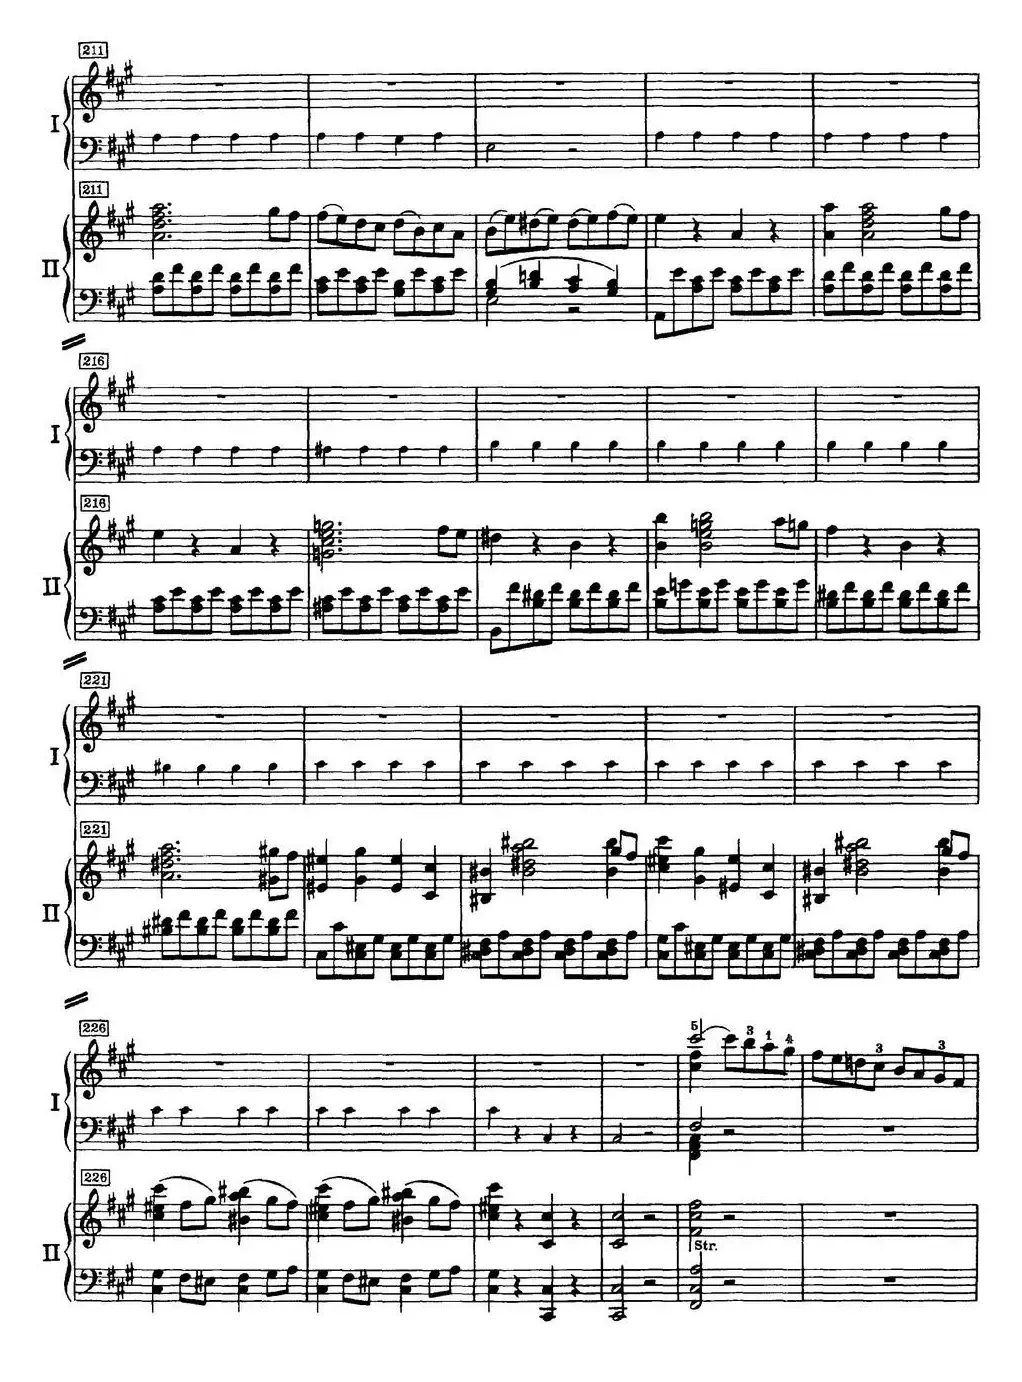 二十八部钢琴协奏曲 No.23（P31-49）